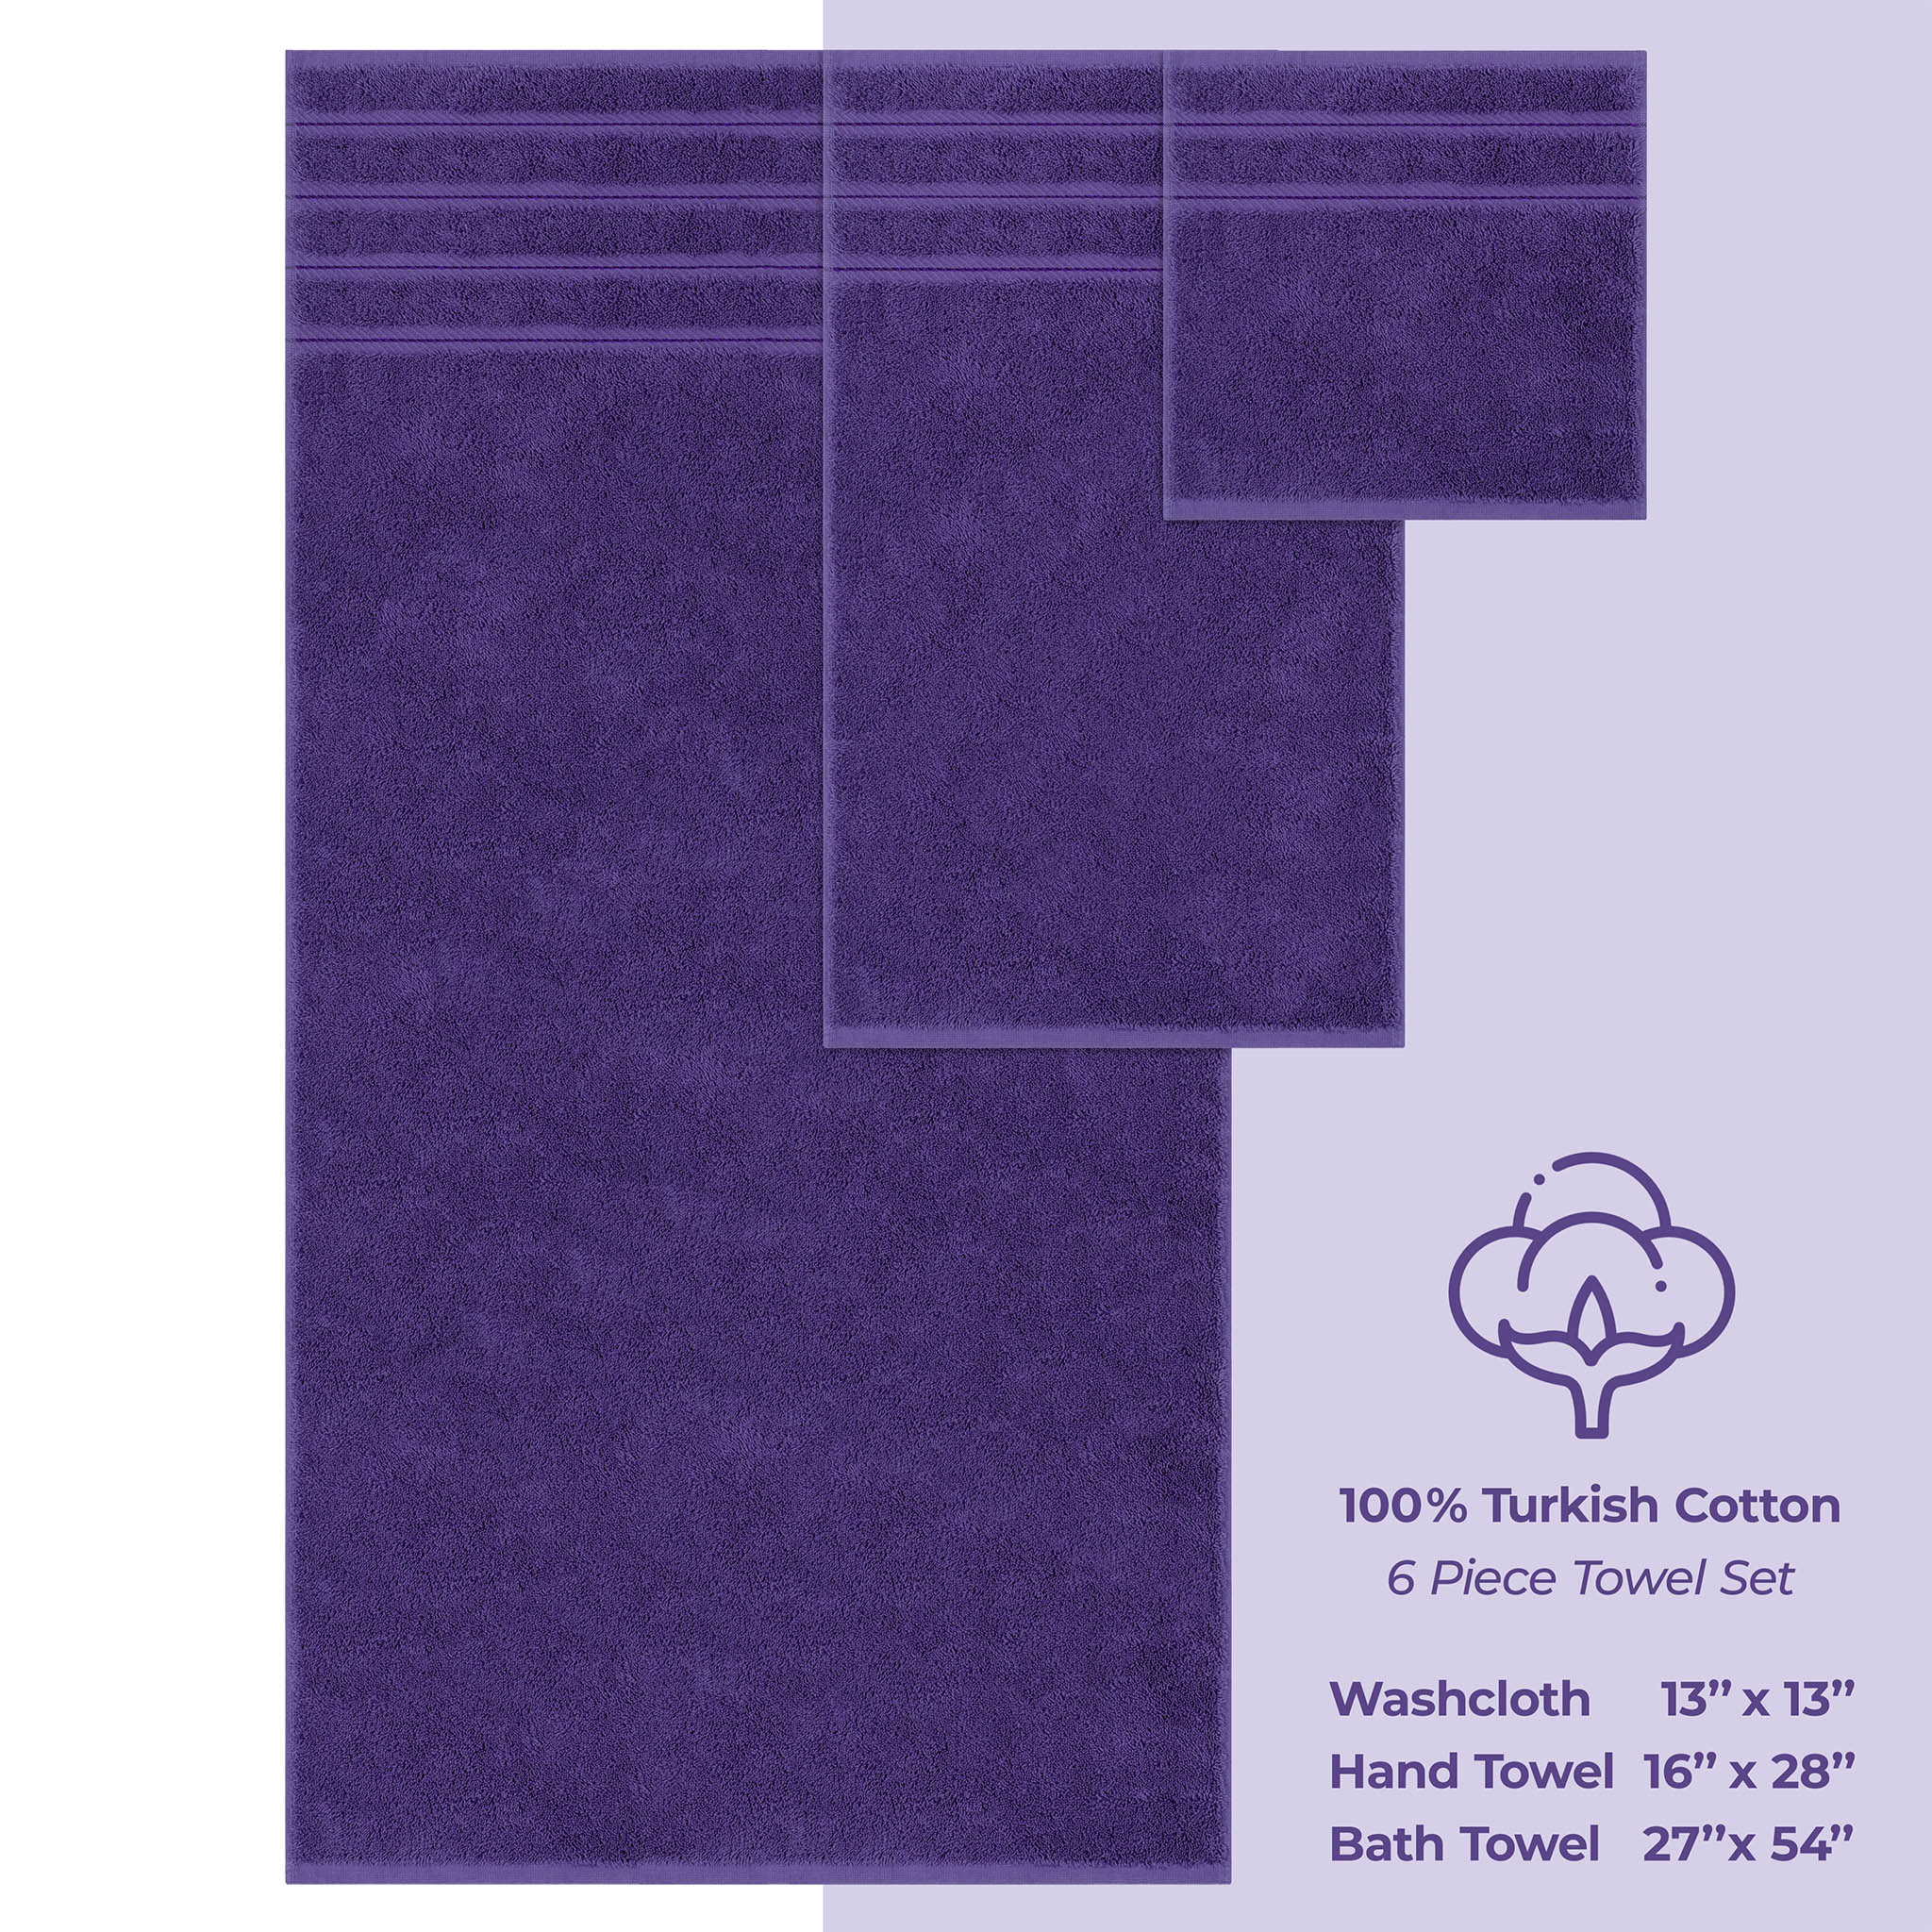 American Soft Linen 100% Turkish Cotton 6 Piece Towel Set Wholesale purple-4